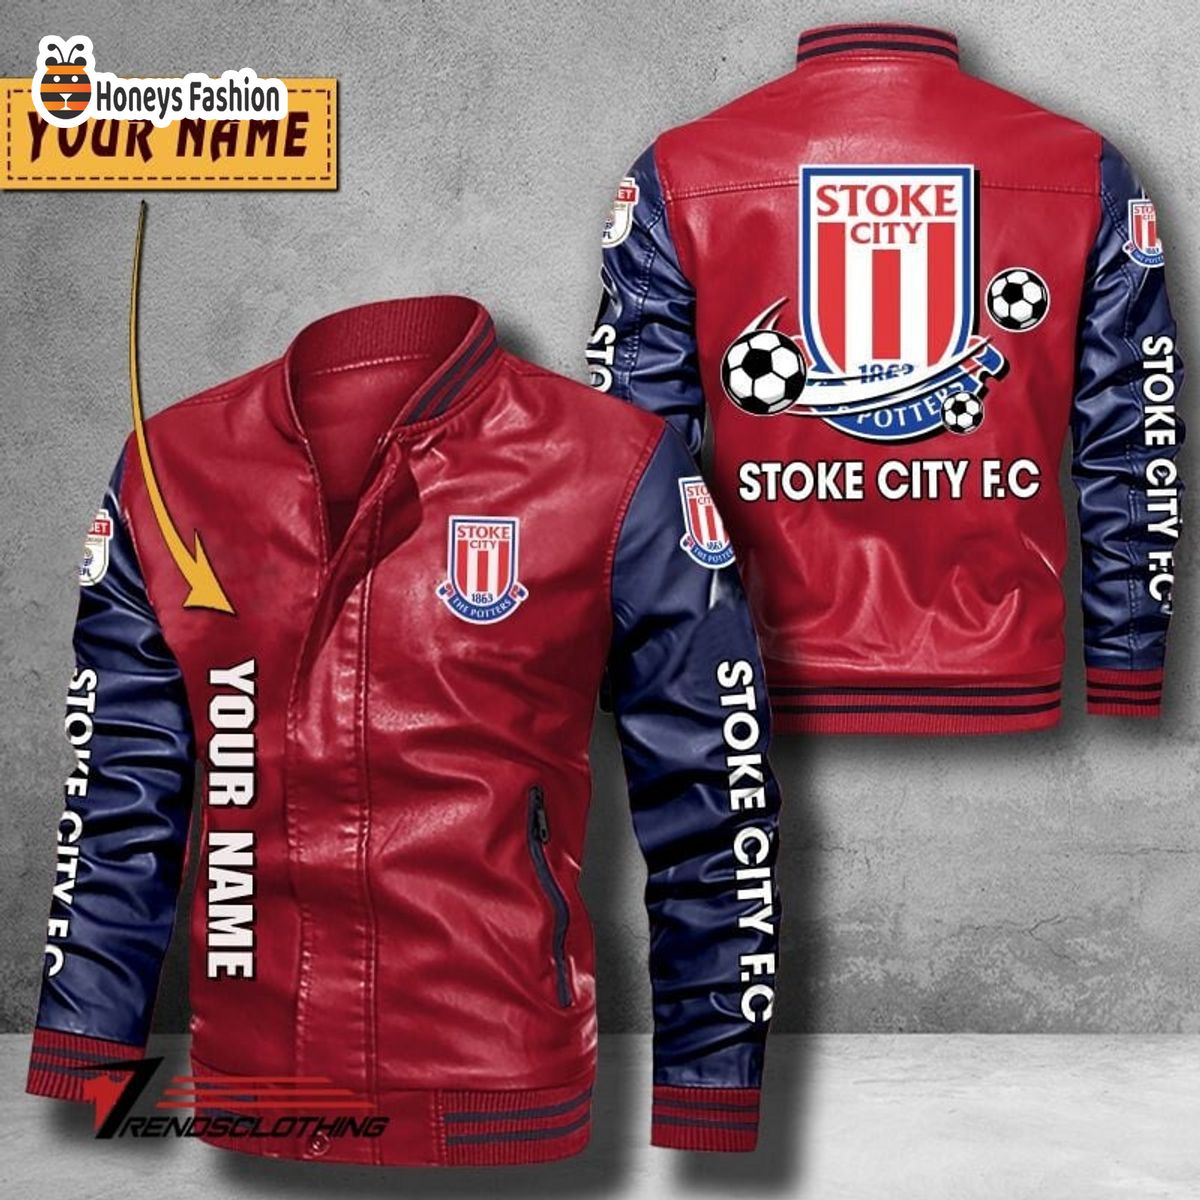 Stoke City F.C Custom Name Leather Bomber Jacket